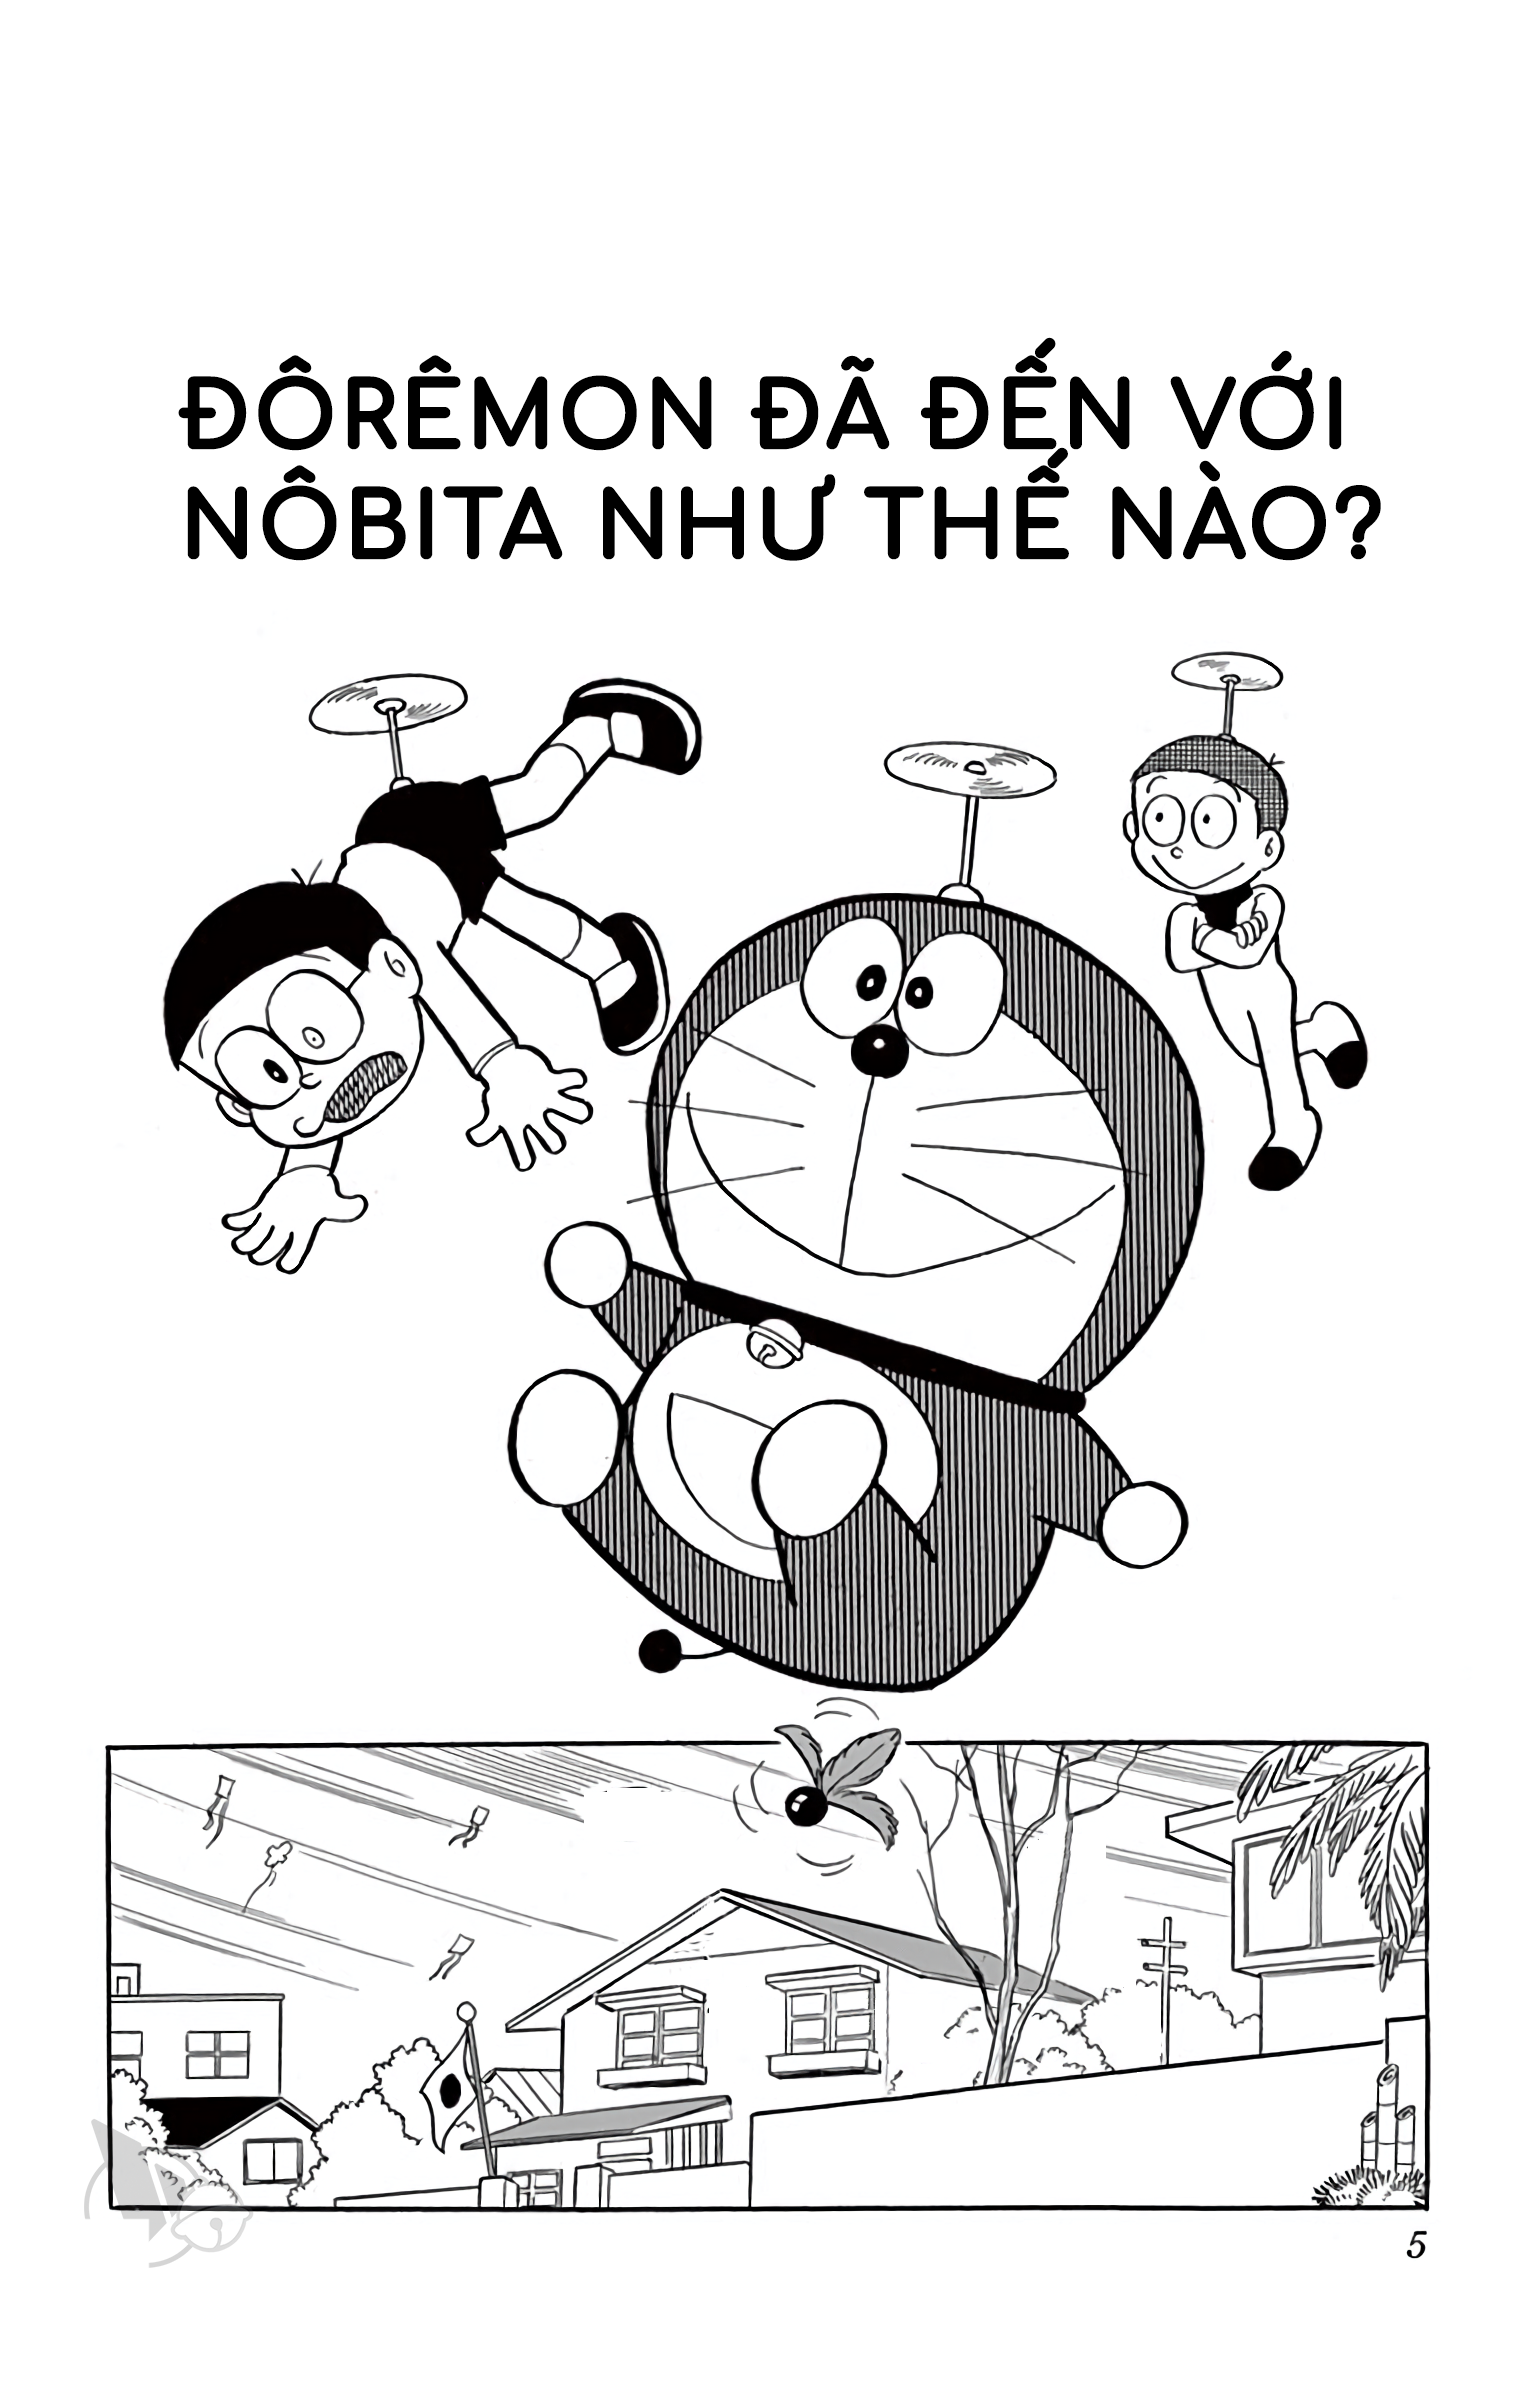 Tập 1 - Chương 1: Doremon Đã Đến Với Nobita Như Thế Nào? - Thư Viện Ebook  Miễn Phí